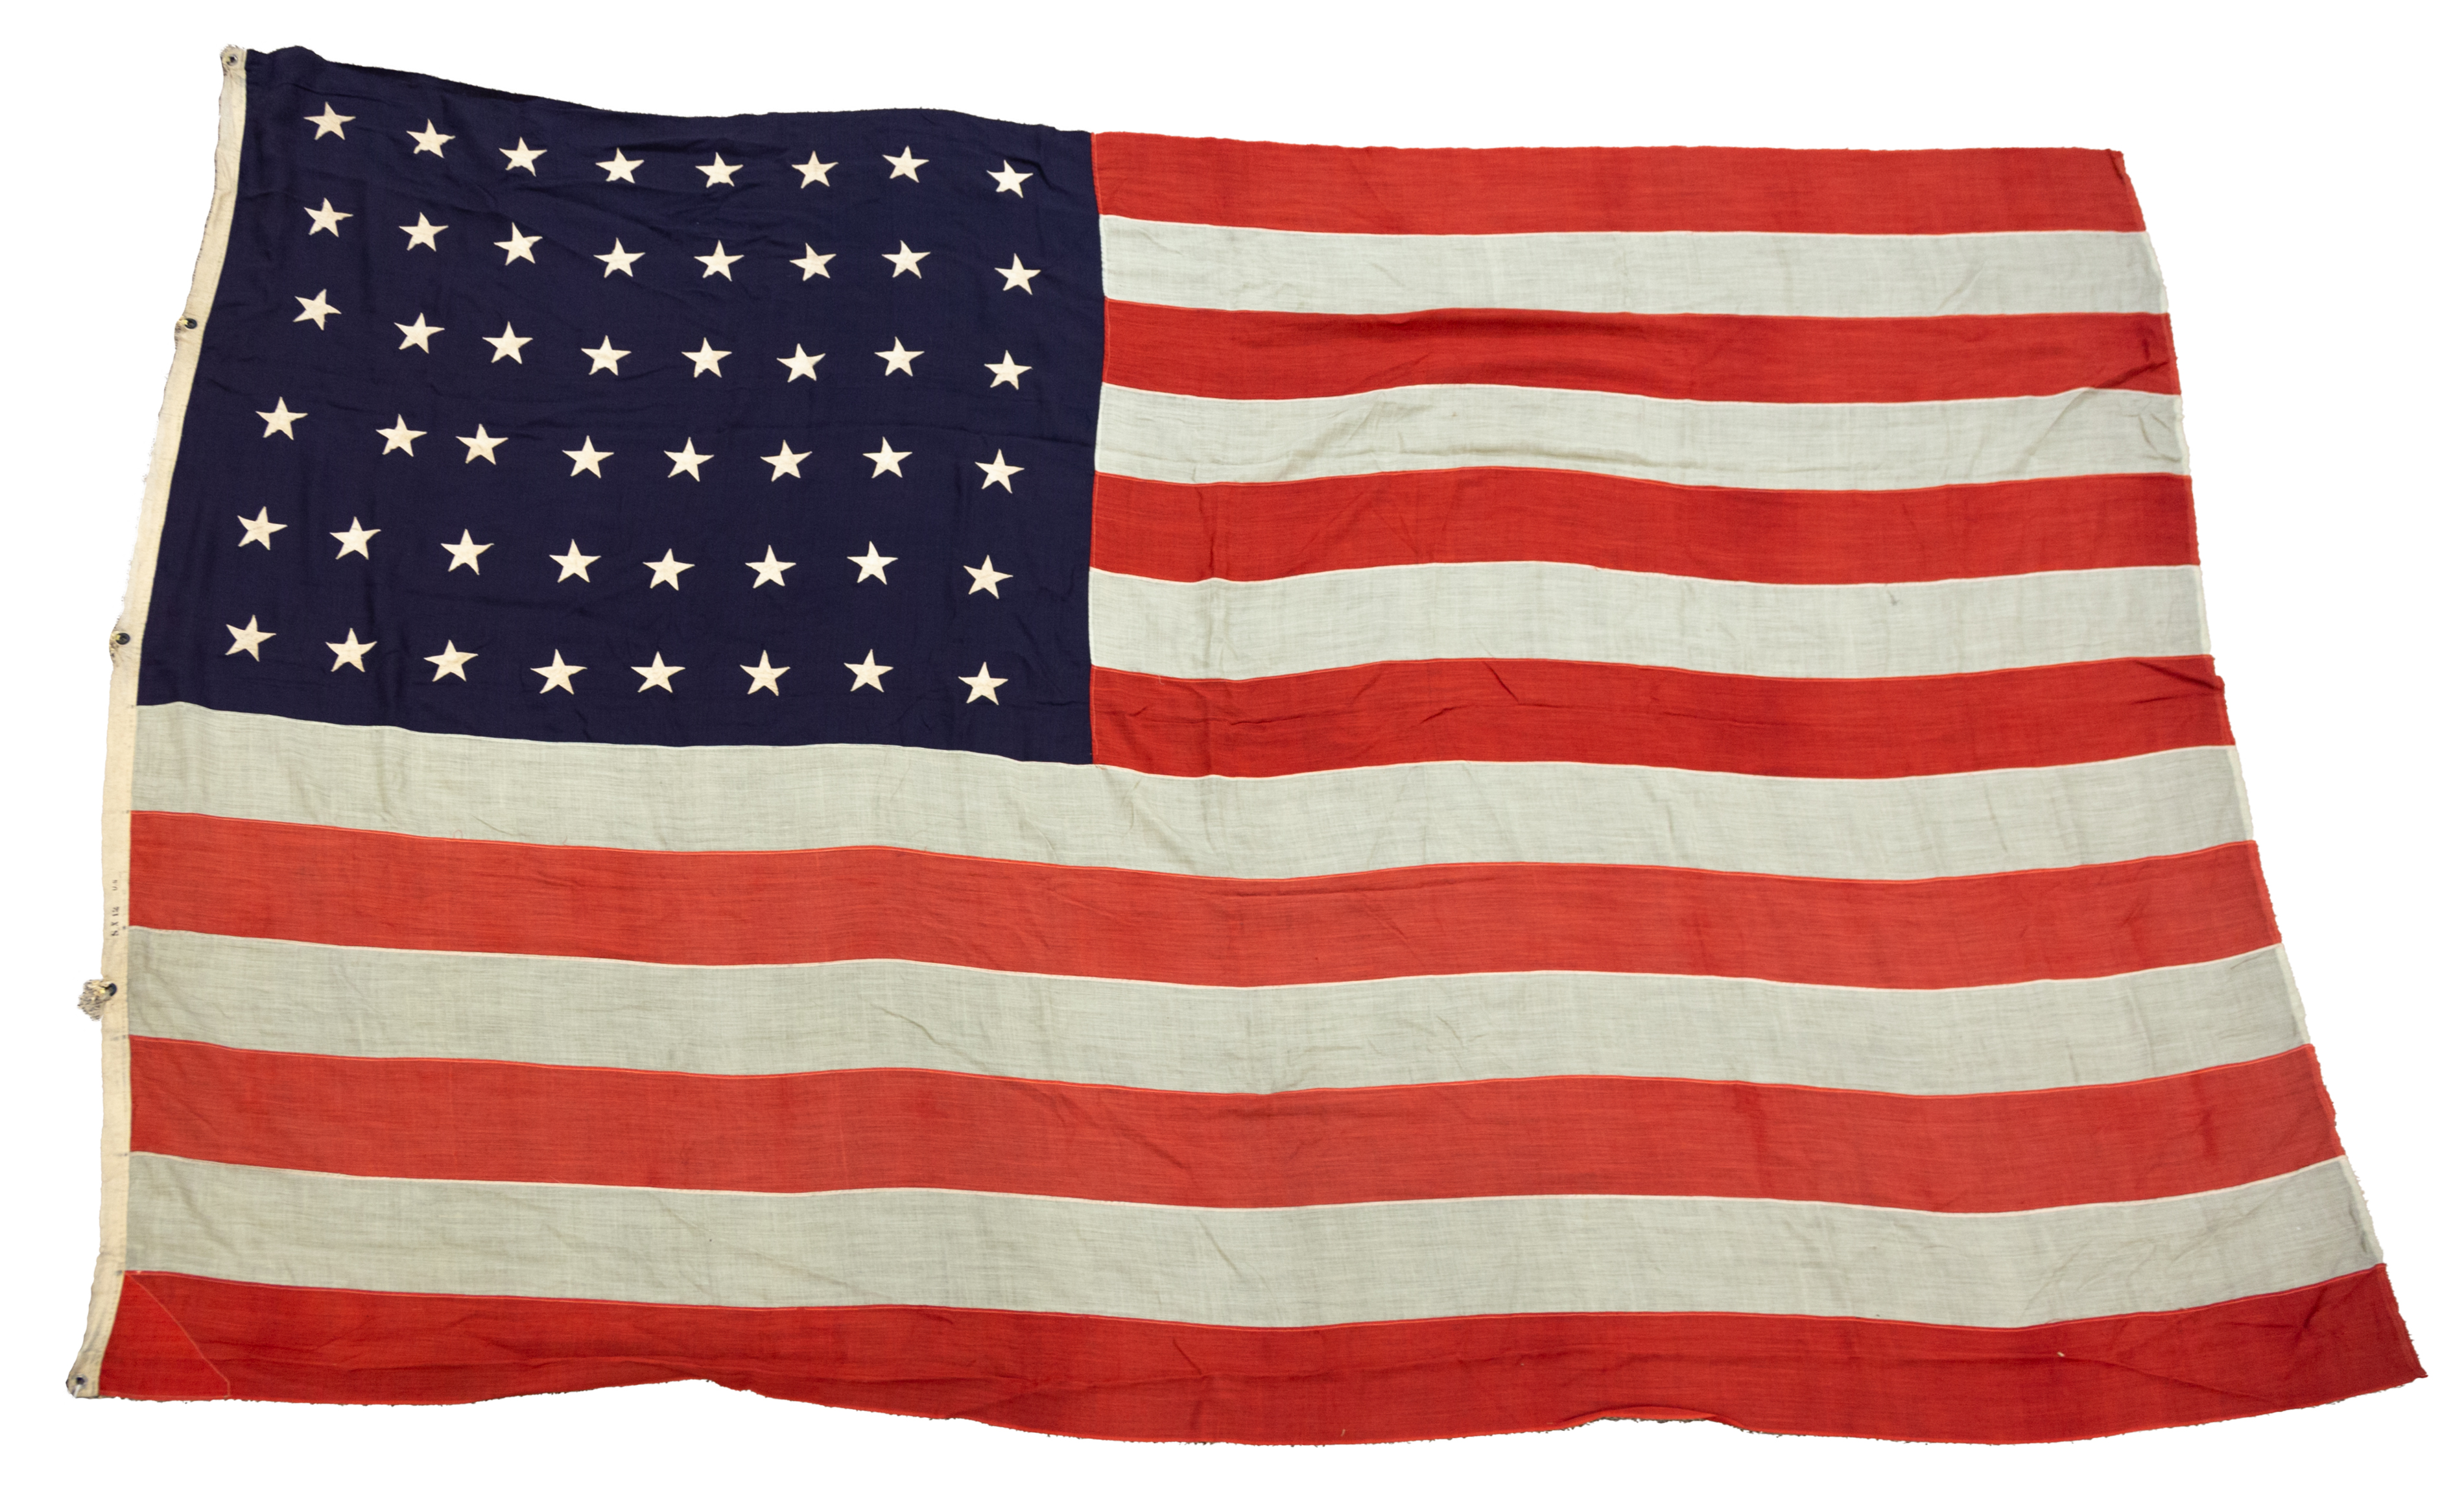  3 VINTAGE AMERICAN FLAGS 48  2c8897